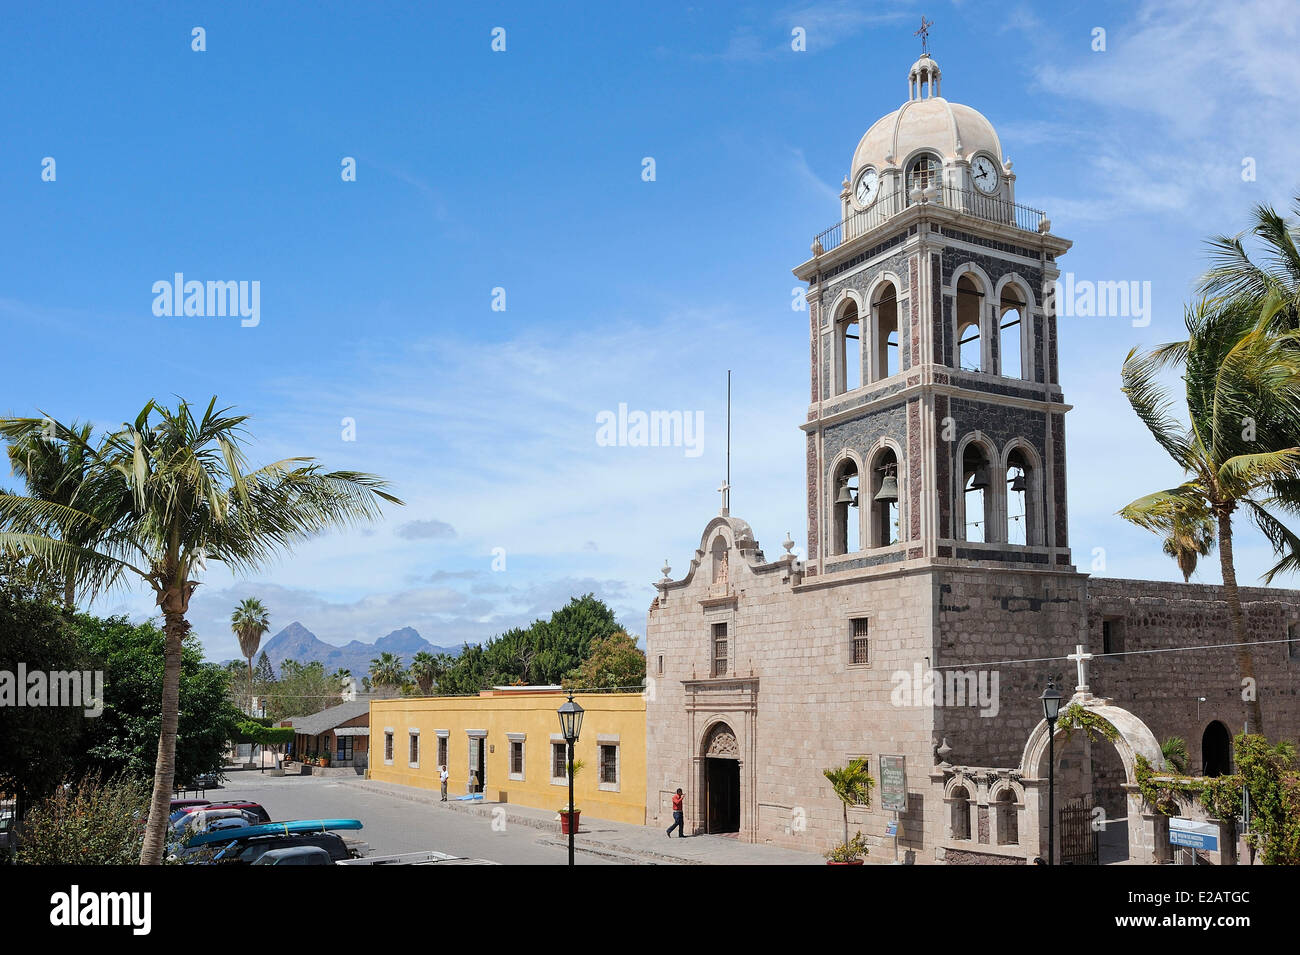 Mexico, Baja California Sur State, Loreto, Mission Nuestra Senora de Loreto of 1697 Stock Photo